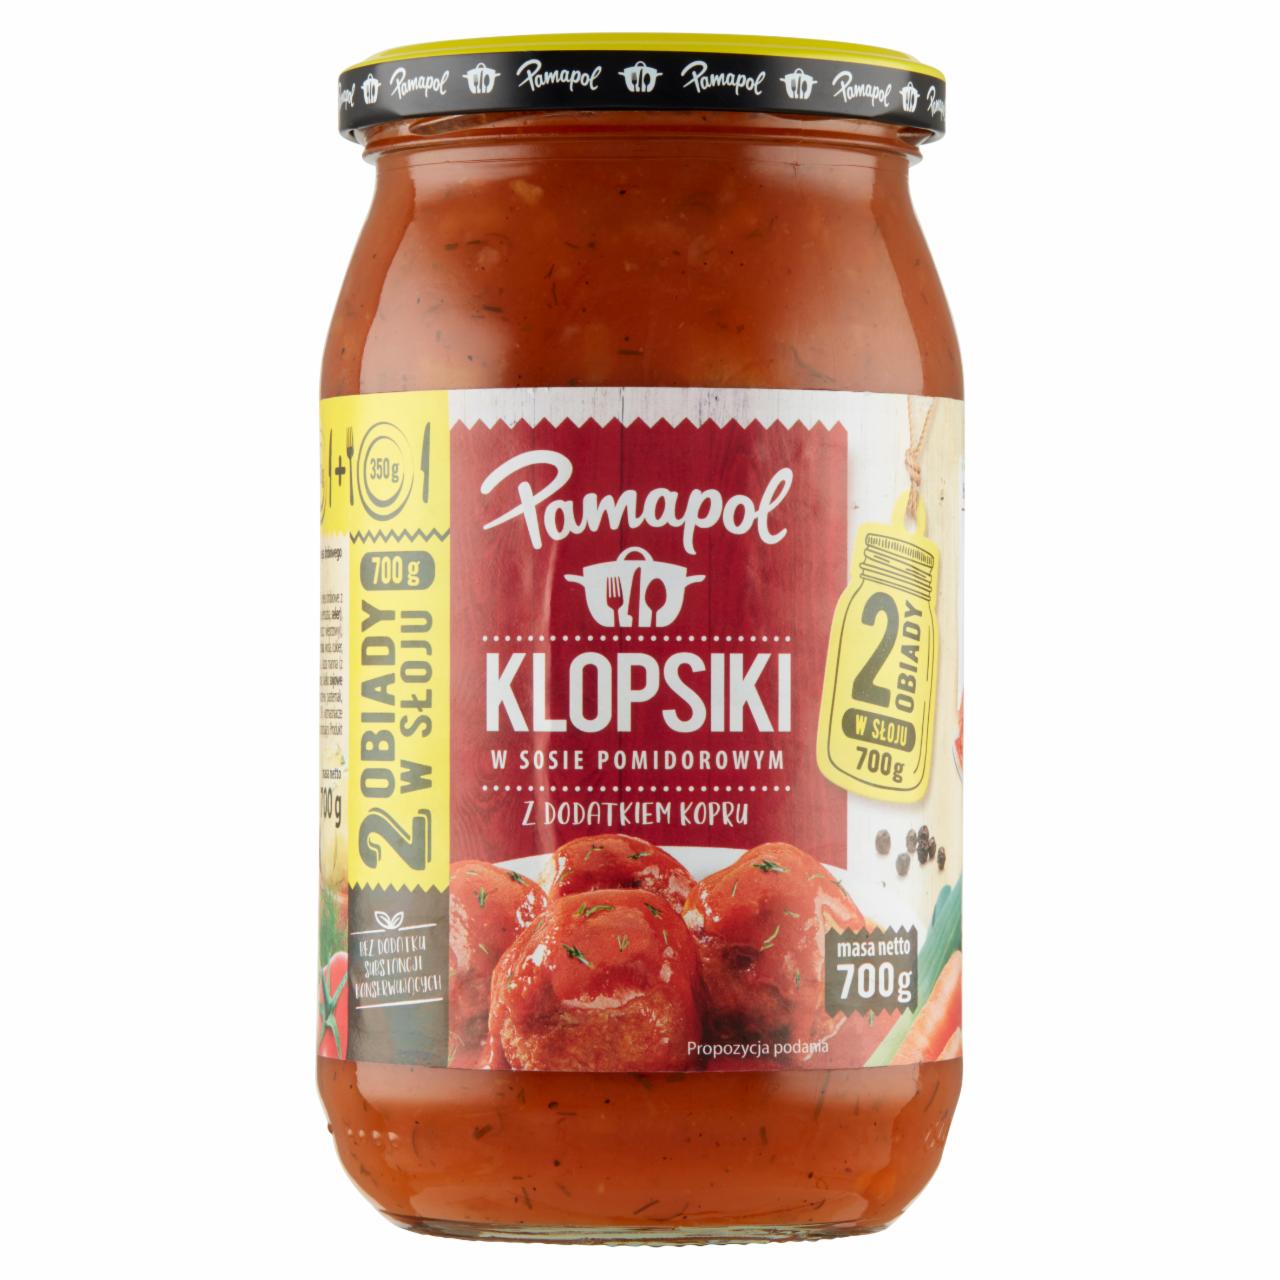 Zdjęcia - Pamapol Klopsiki w sosie pomidorowym z dodatkiem kopru 700 g